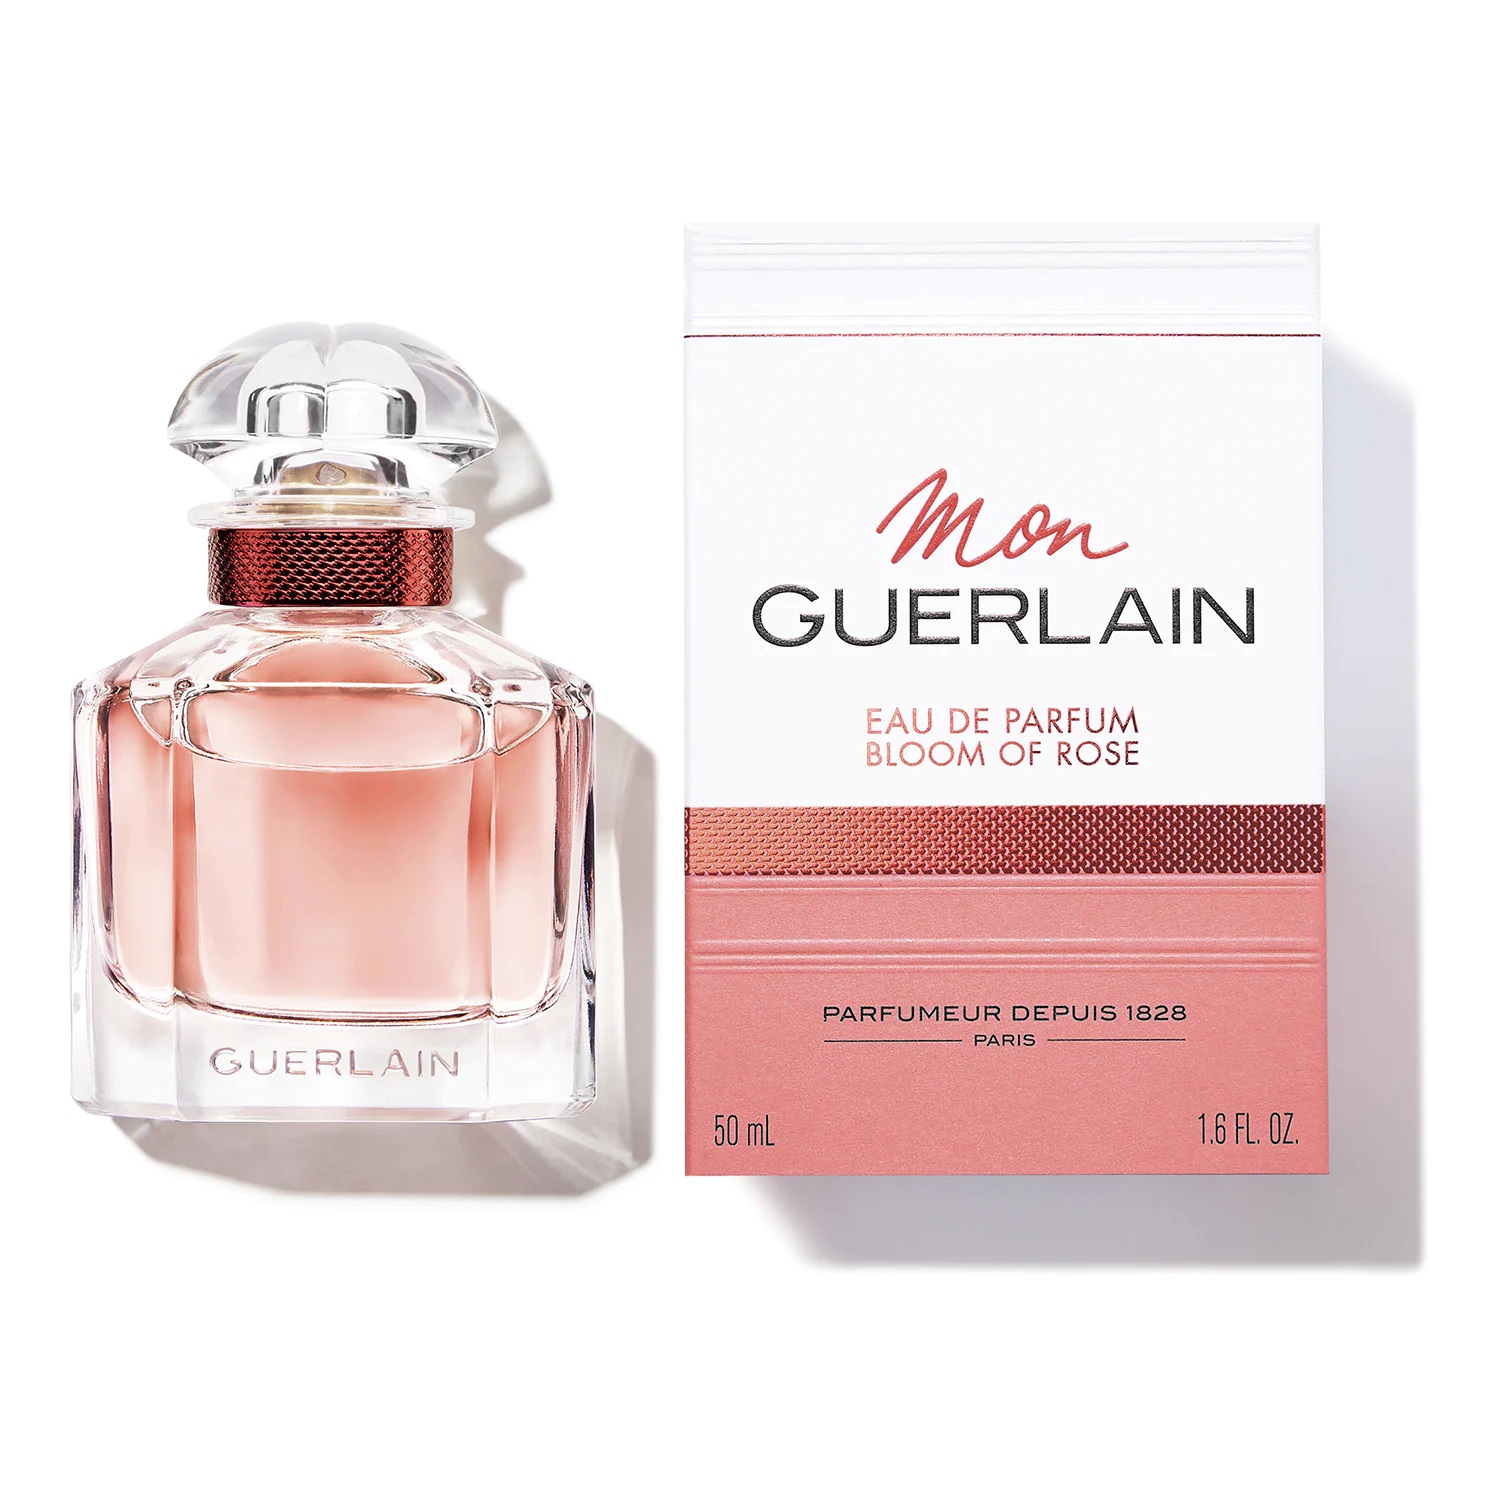 Guerlain de parfum Mon Bloom Scentists - of Rose Guerlain eau her